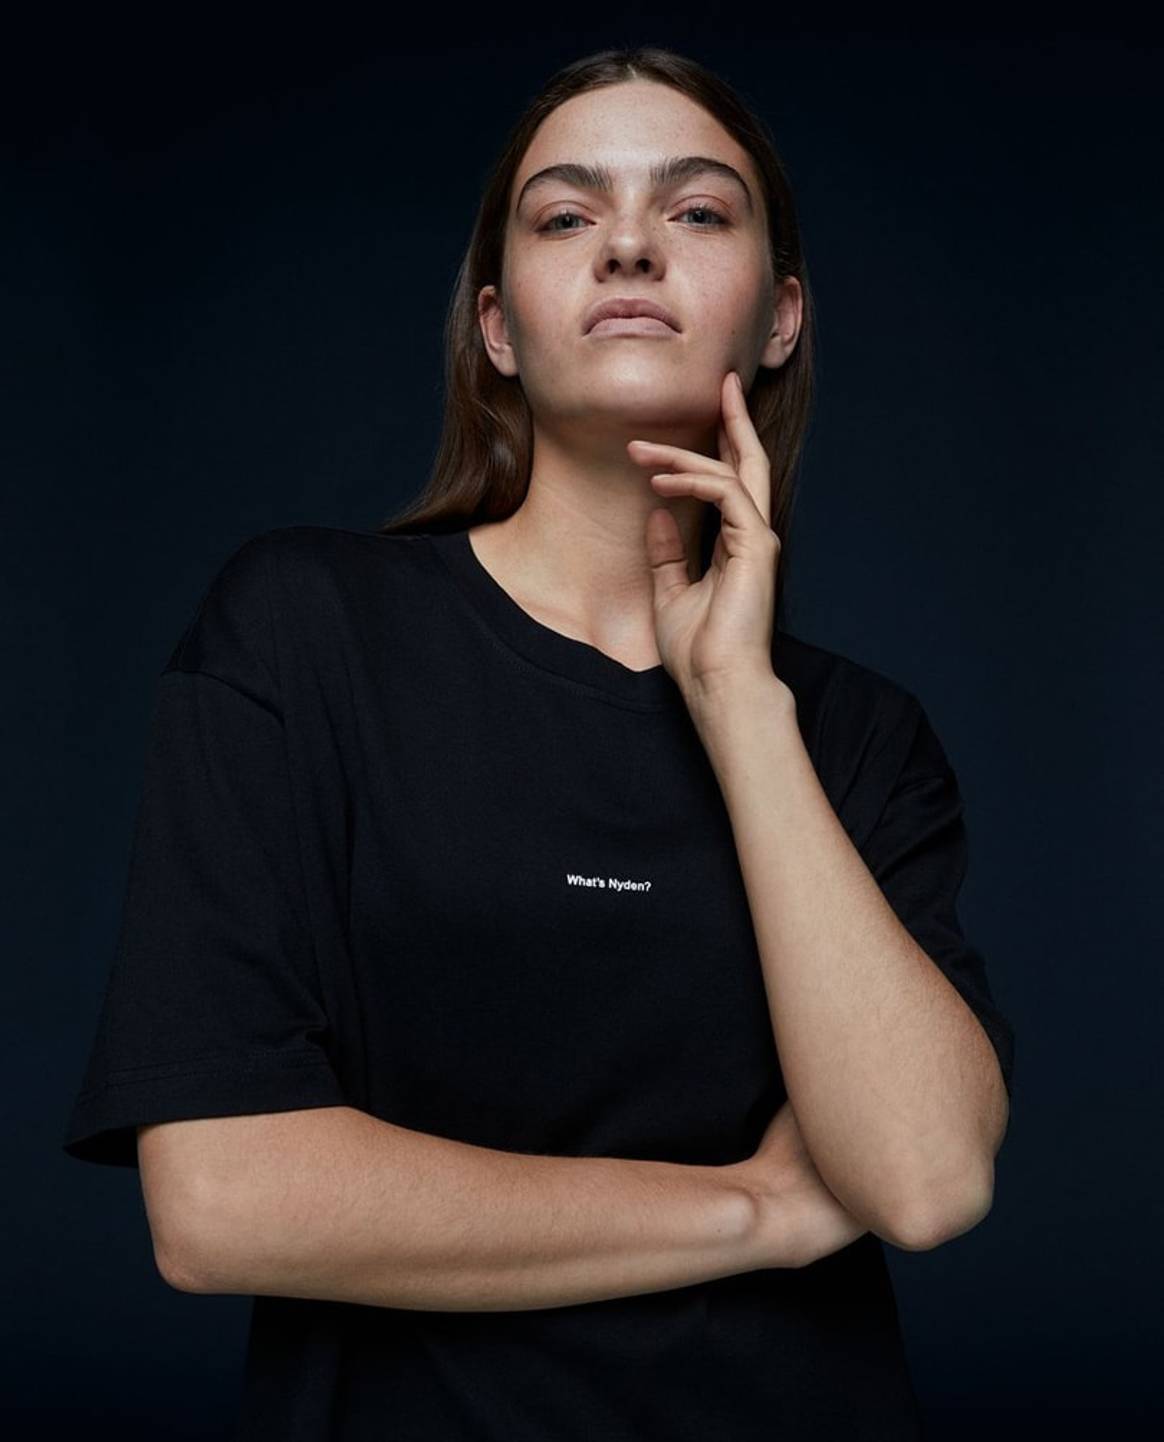 Sneak peek: De eerste beelden van H&M’s millennial merk Nyden